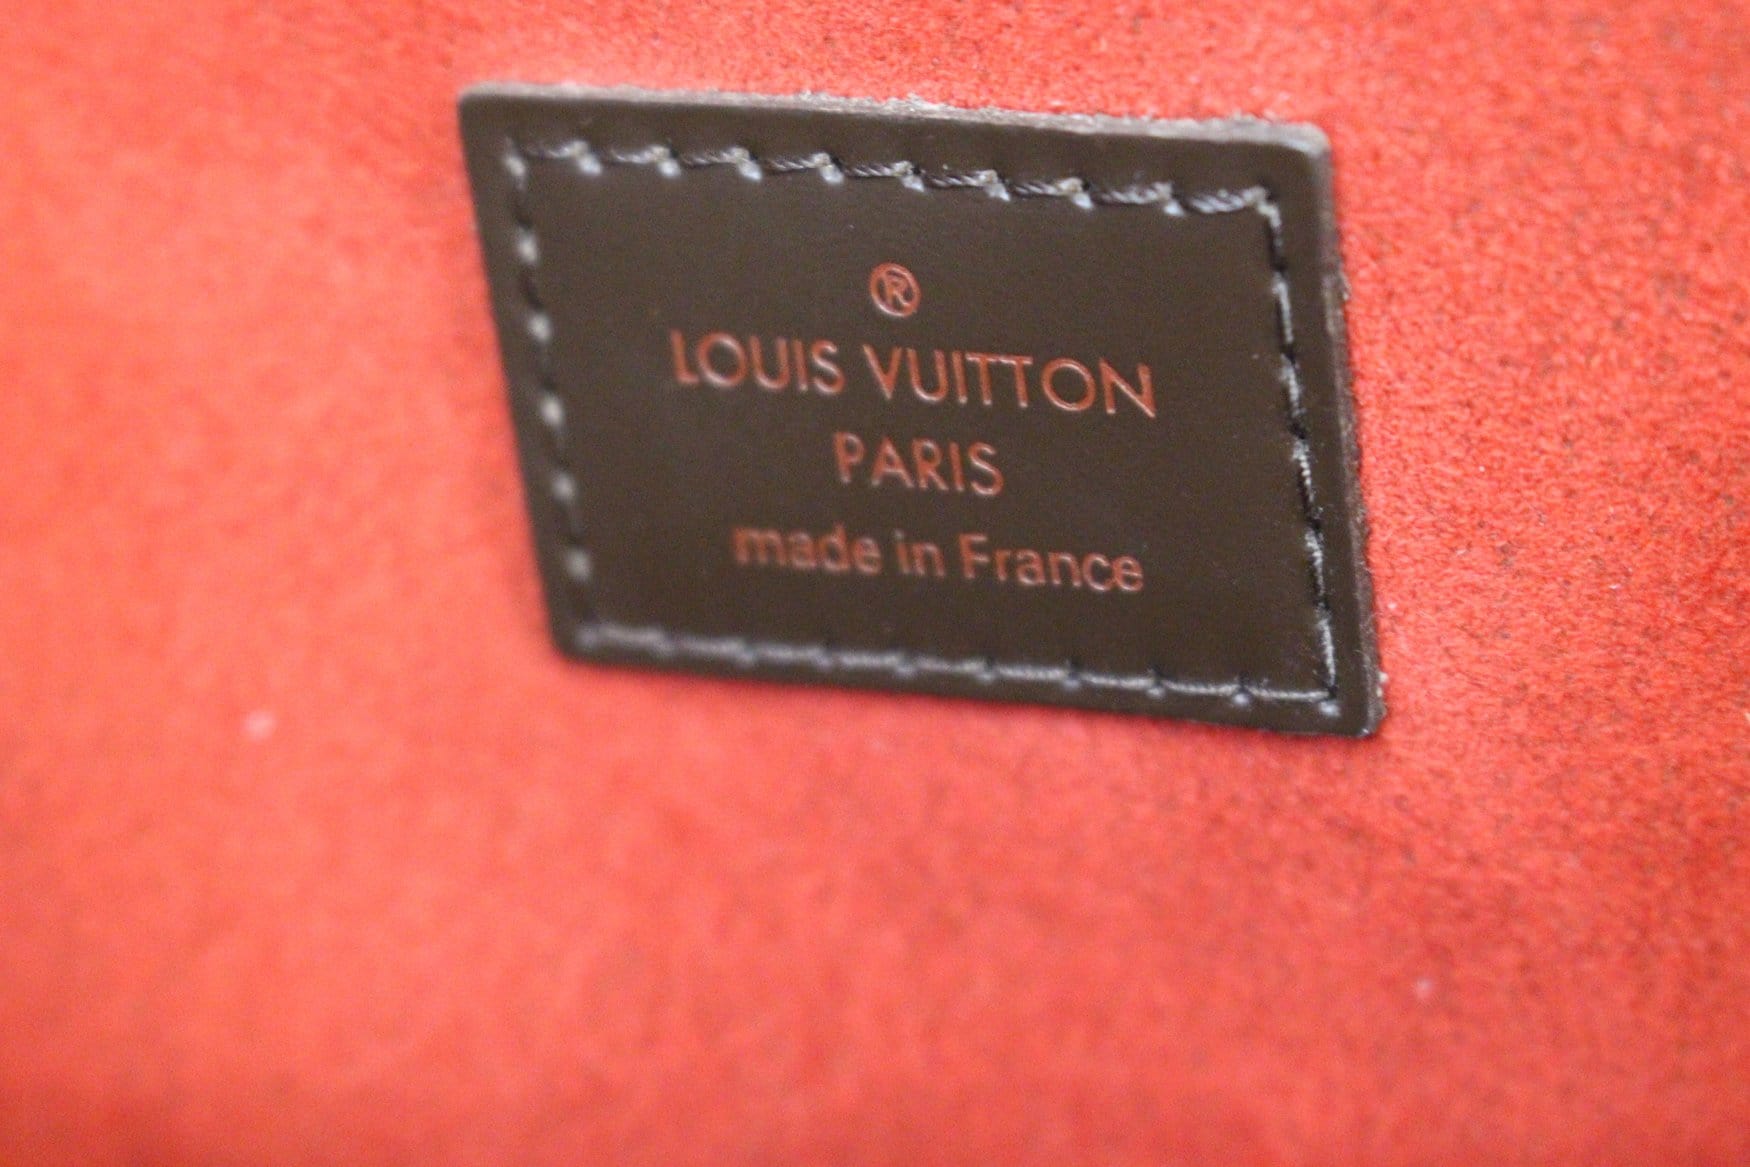 SALE! Authentic Louis Vuitton Damier Ebene Trevi GM